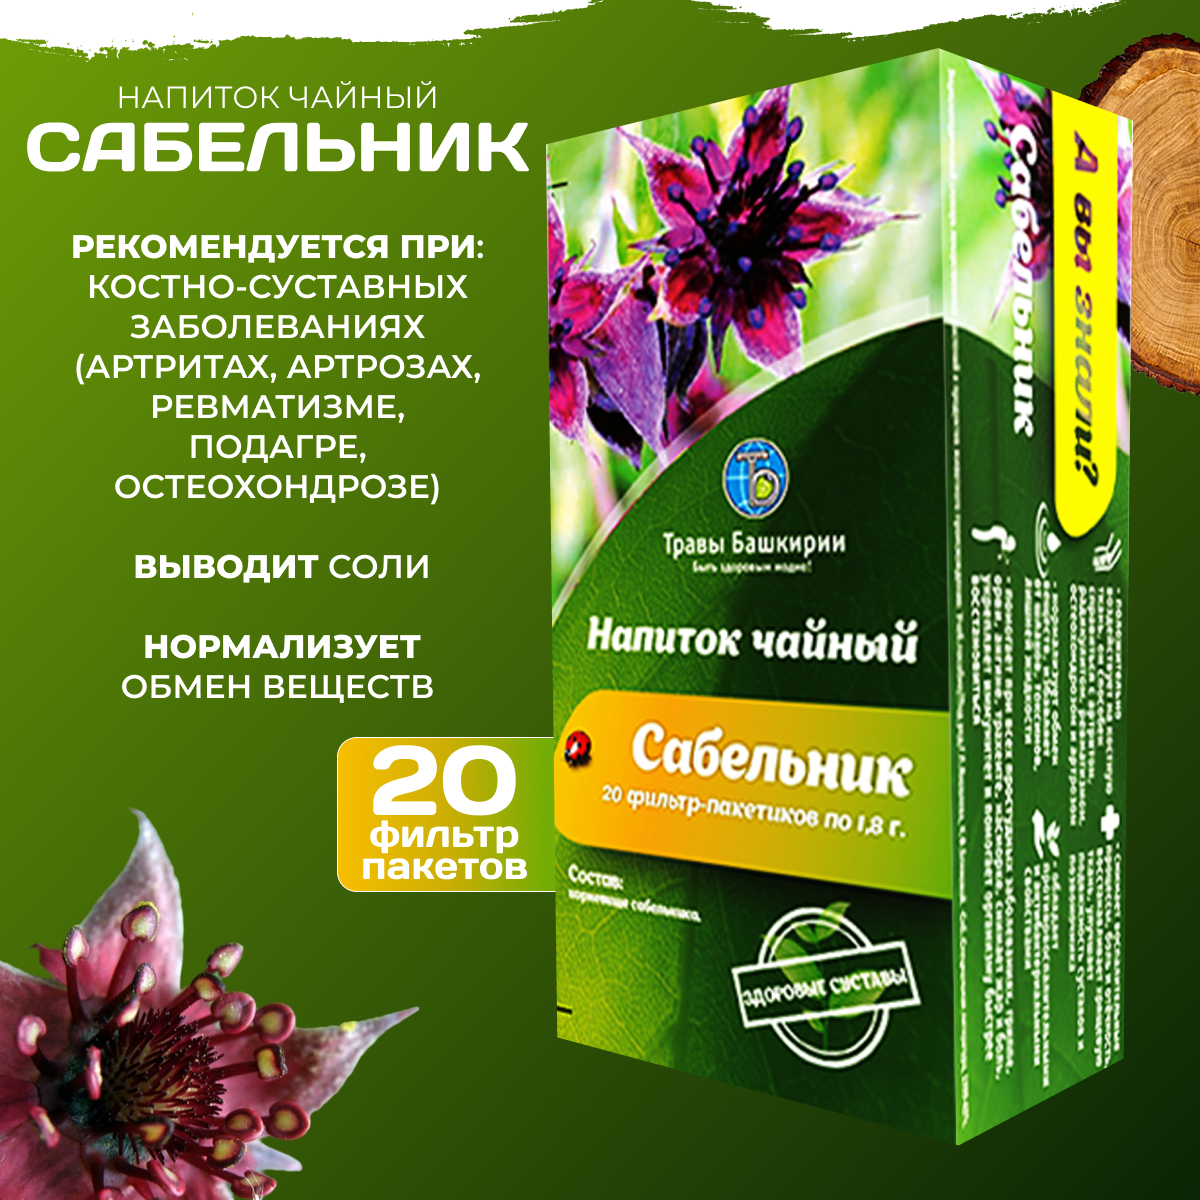 Напиток чайный "Сабельник" Травы Башкирии 20 фильтр пакетов по 18 гр.